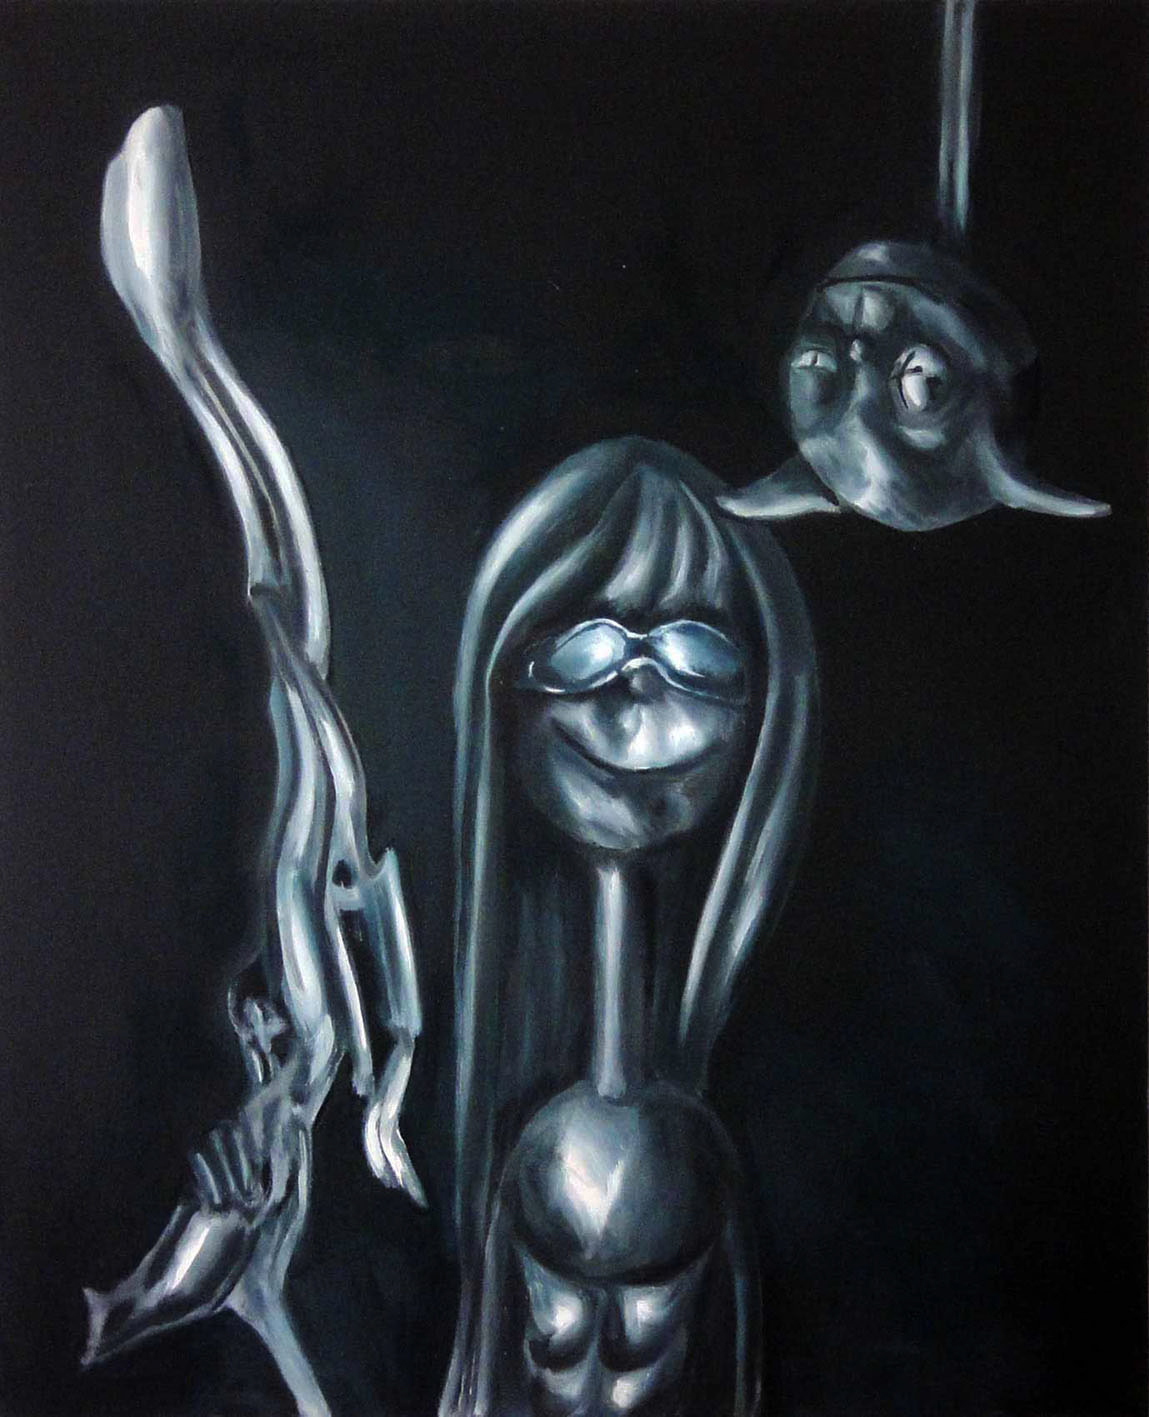 Die Welt der Michelle Doré 2, Öl auf Leinwand, 100 x 80 cm, Haider Al-Zubaidi, 2010, in Privatbesitz